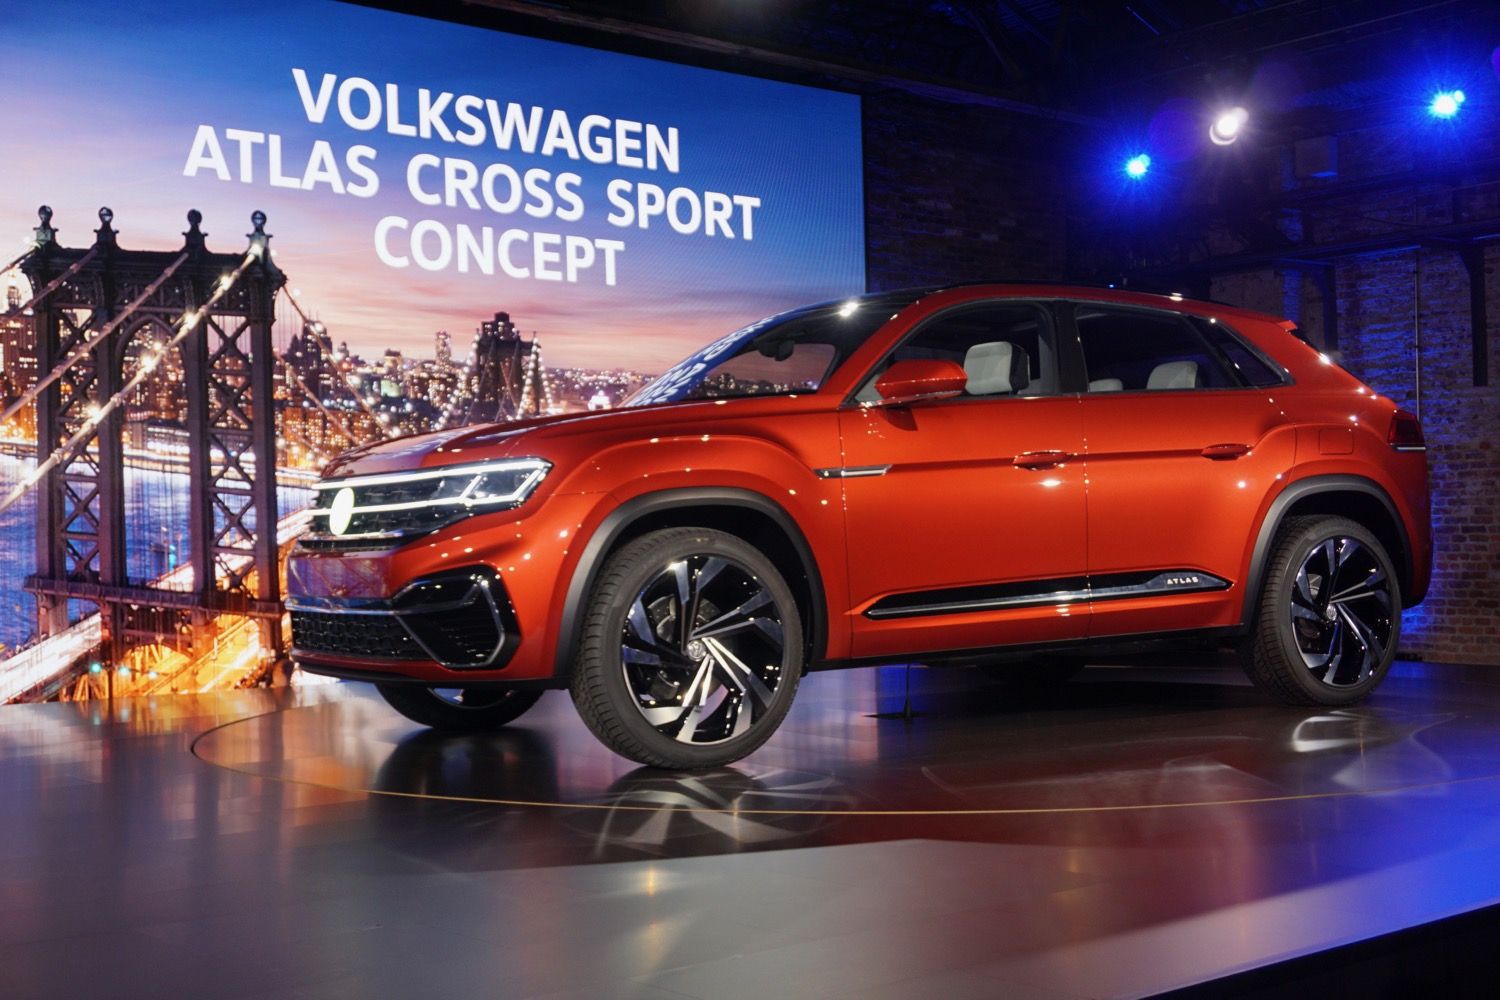 Volkswagen Atlas Cross Sport concept